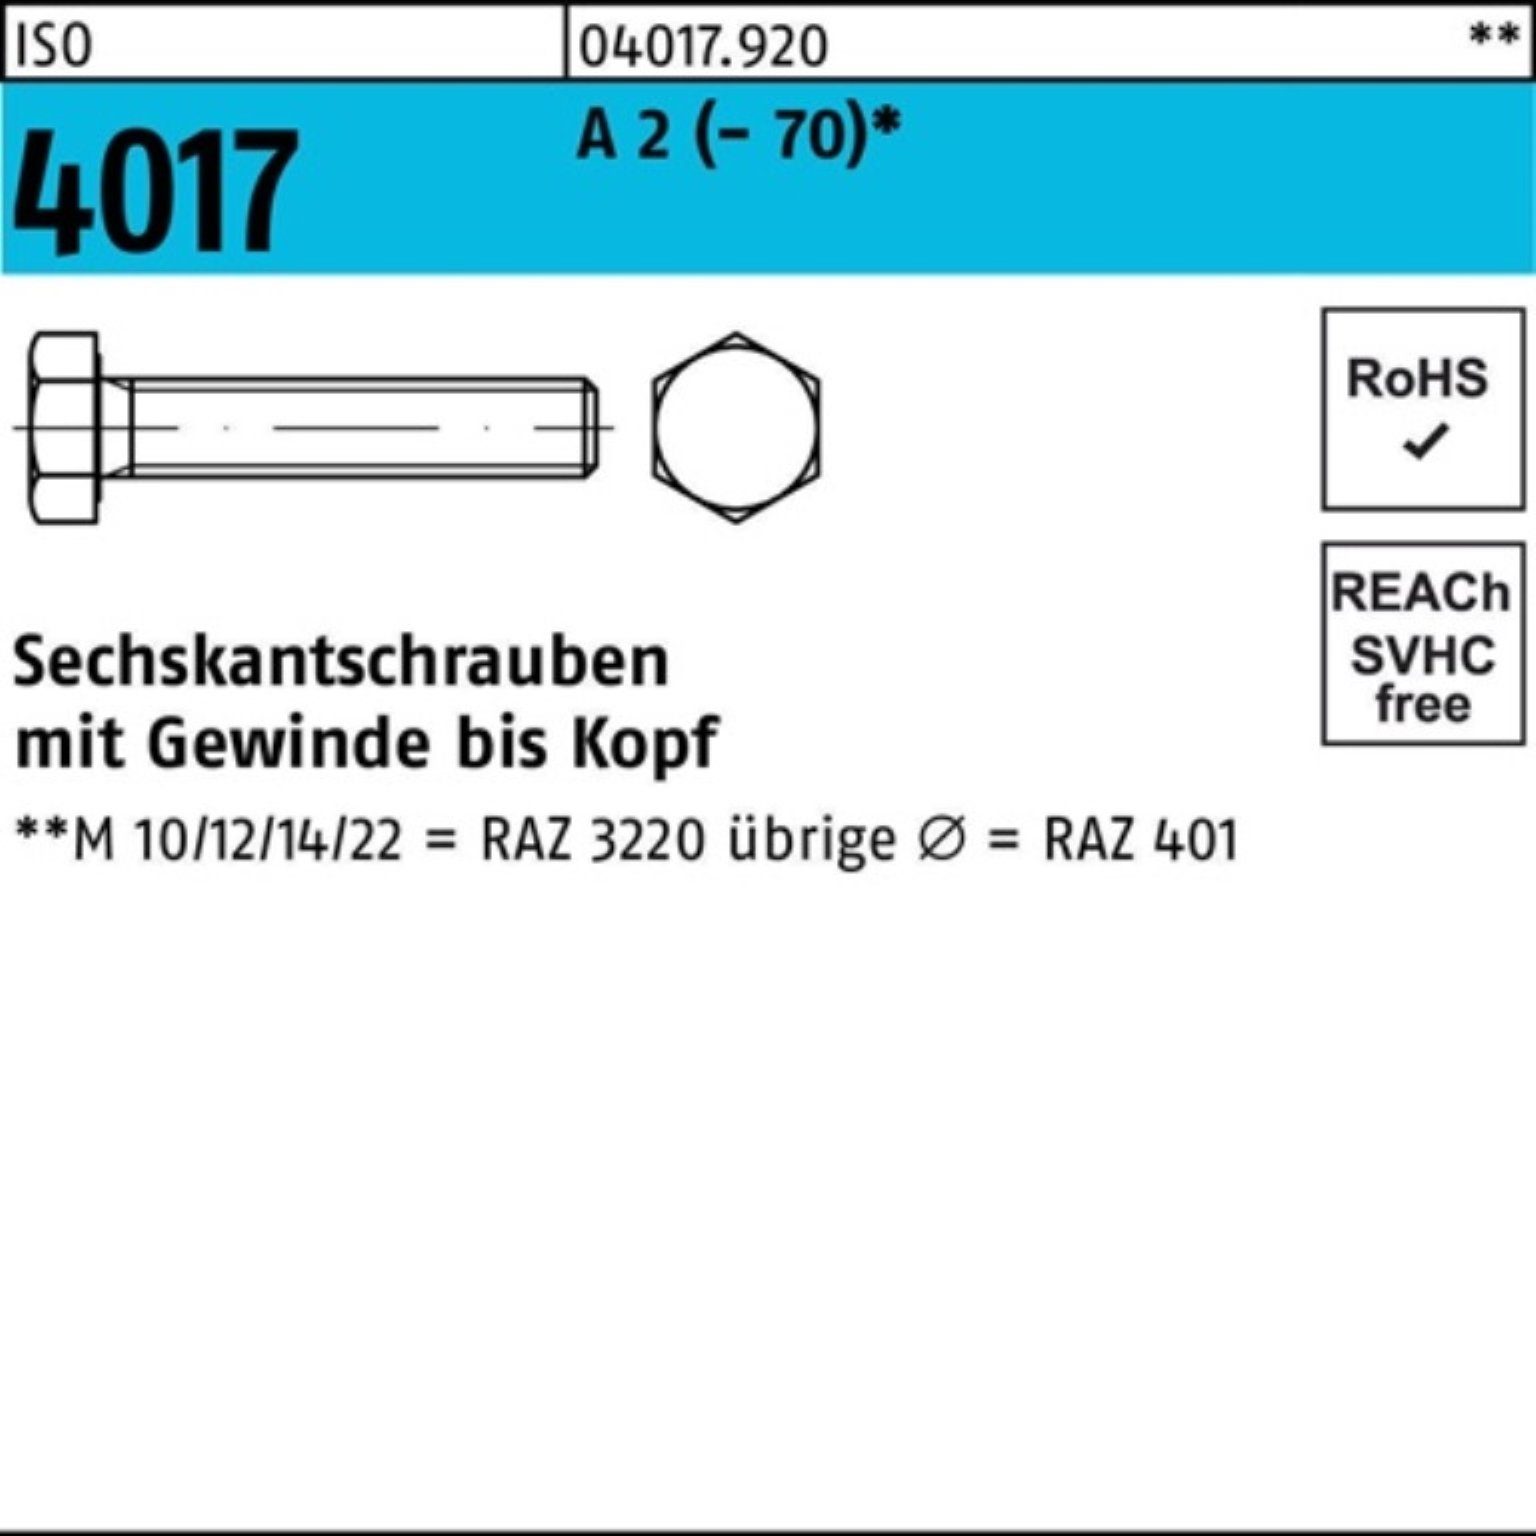 Bufab Sechskantschraube 100er Pack Sechskantschraube ISO 4017 VG M33x 90 A 2 (70) 1 Stück I